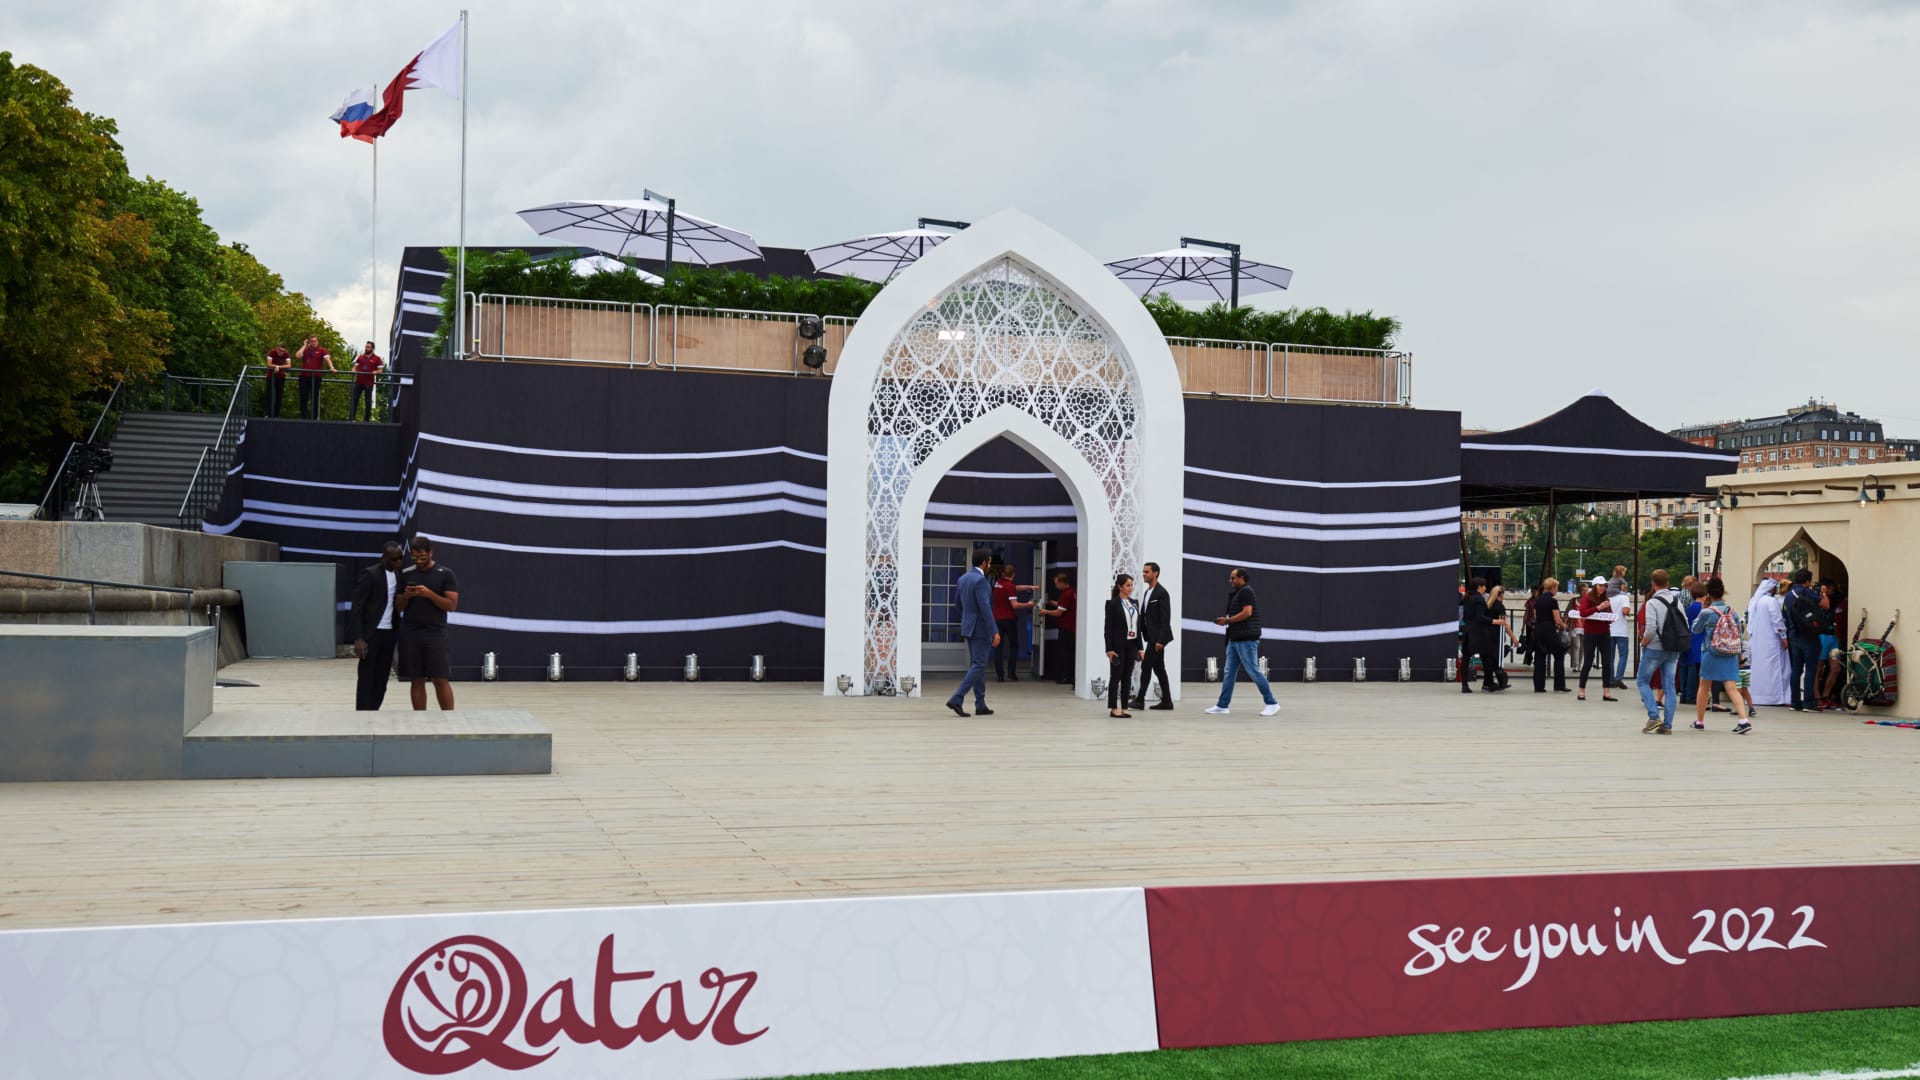 "مجلس قطر" هو جناح مكون من ثلاثة طوابق وسط حديقة "غوركي بارك" في موسكو، يستوحي تصميمه من بيت الشعر الشائع في دول الخليج.